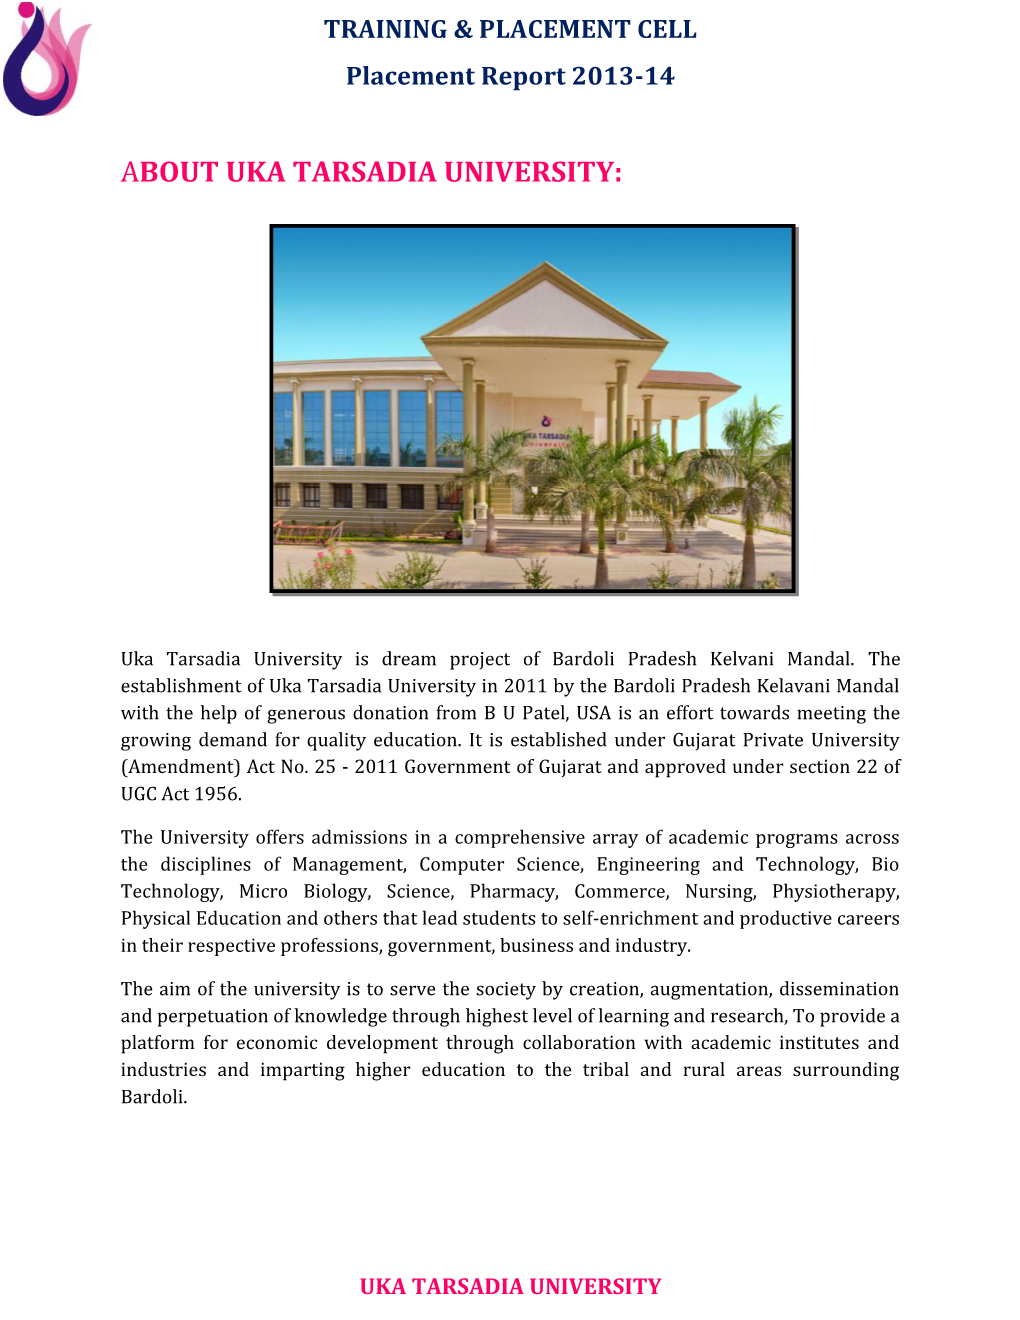 About Uka Tarsadia University